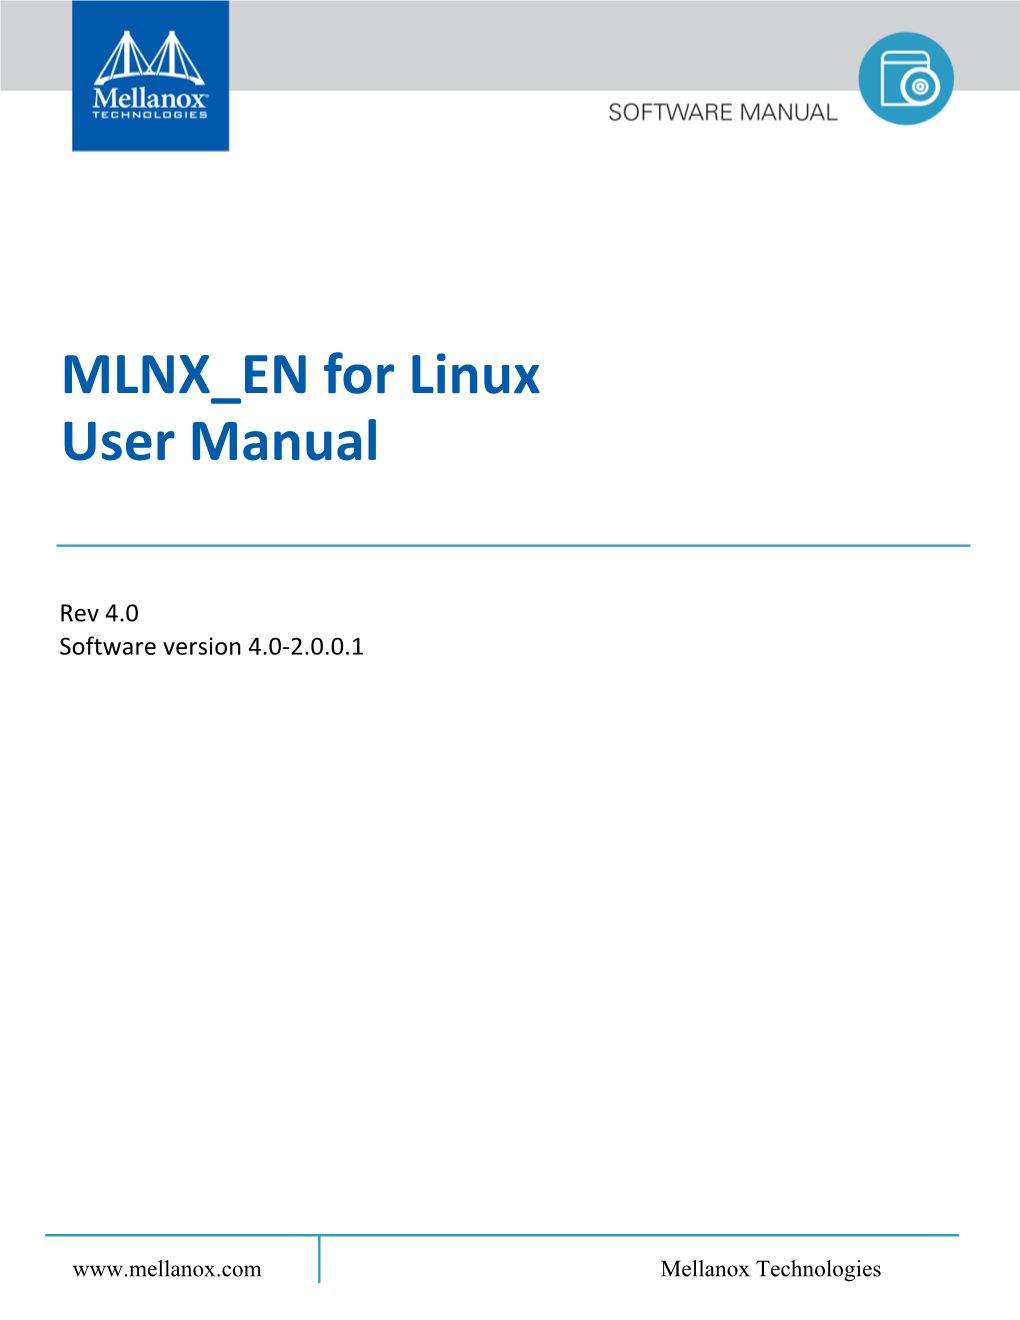 MLNX EN for Linux User Manual